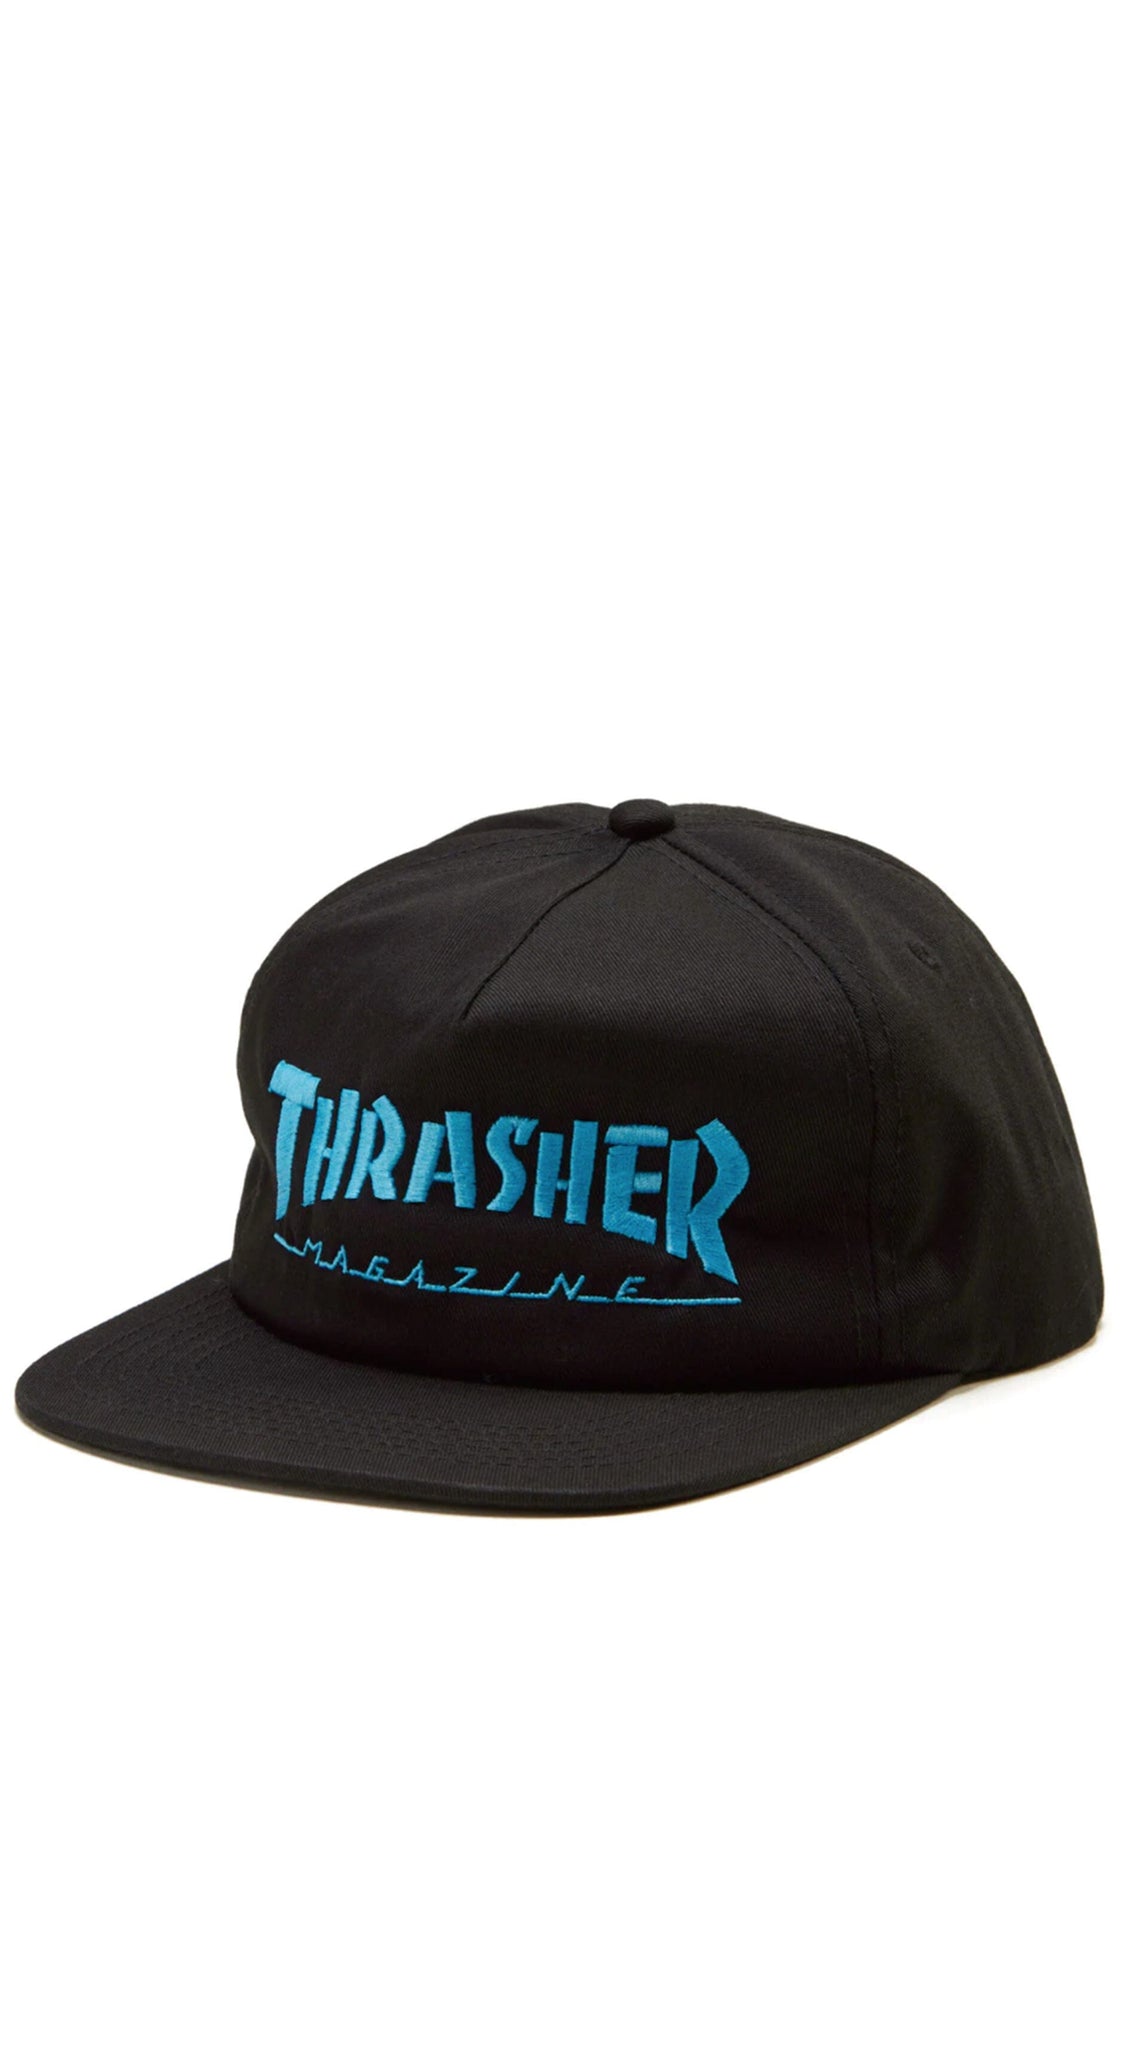 Thrasher Skate Mag Logo snapback hat -Gorra Ropa Thrasher Magazine 